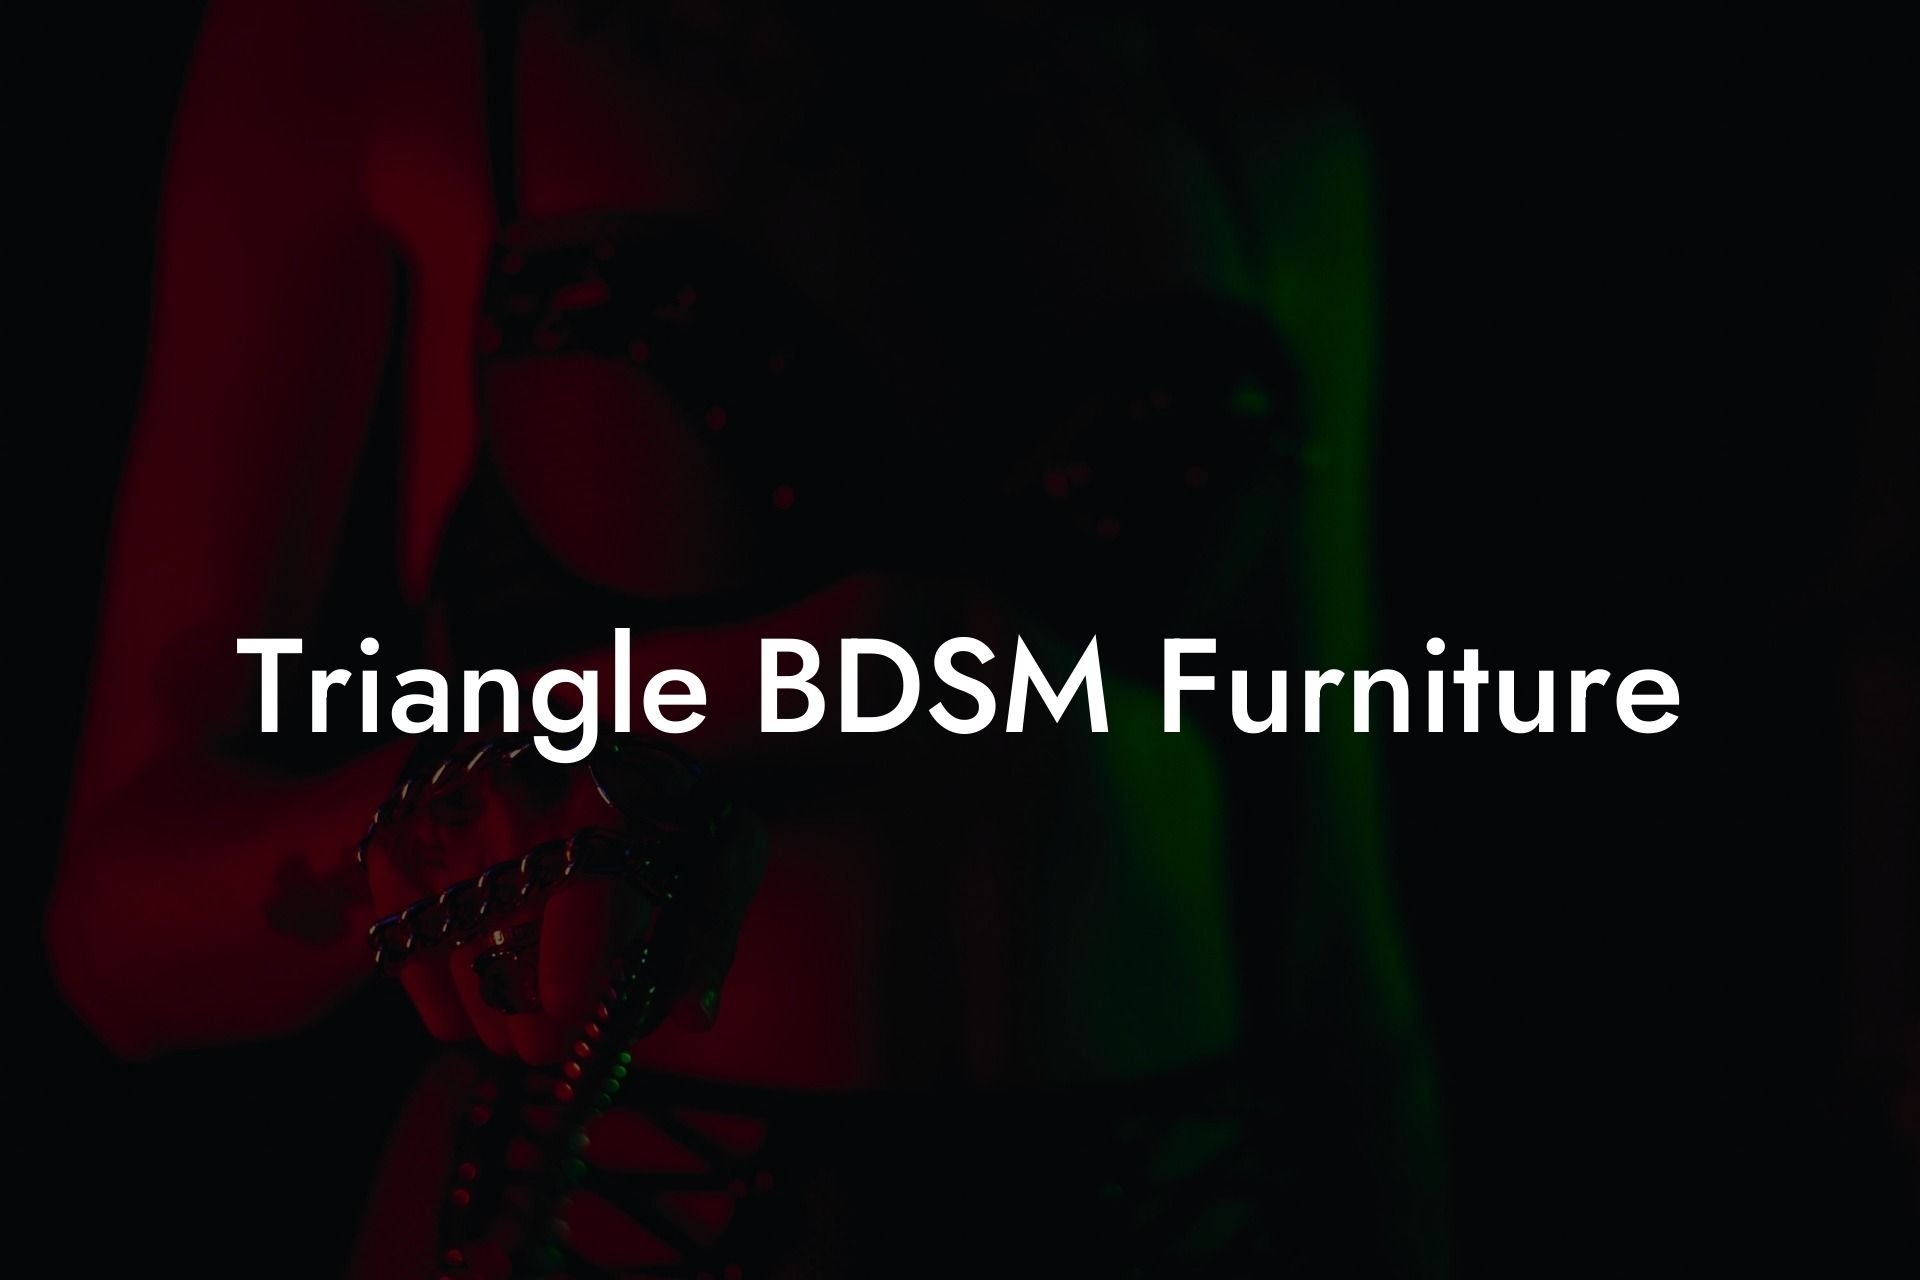 Triangle BDSM Furniture